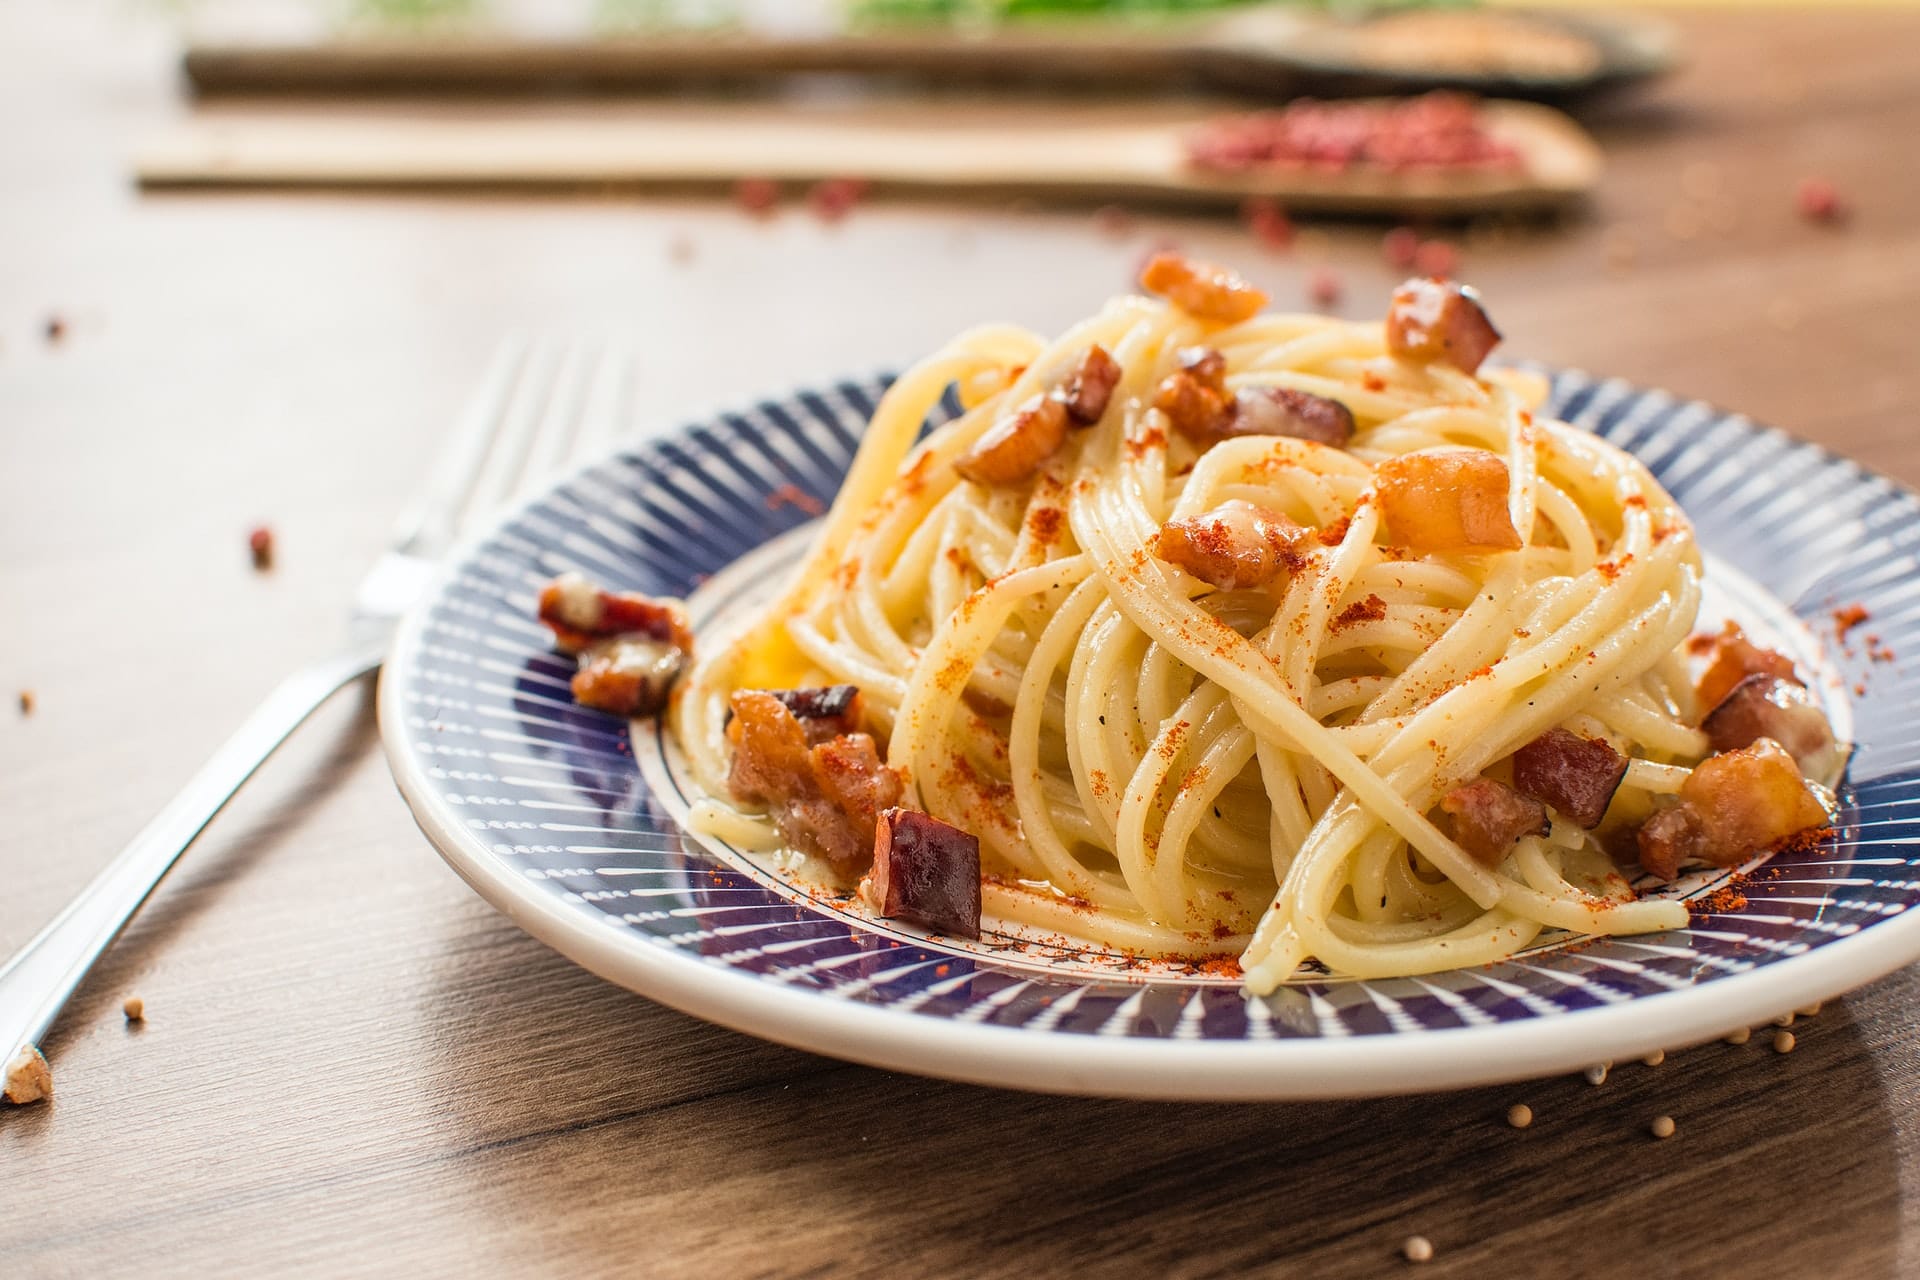 O macarrão à carbonara é uma receita típica italiana muito famosa, e agora você vai aprender como fazer esse prato delicioso em casa.